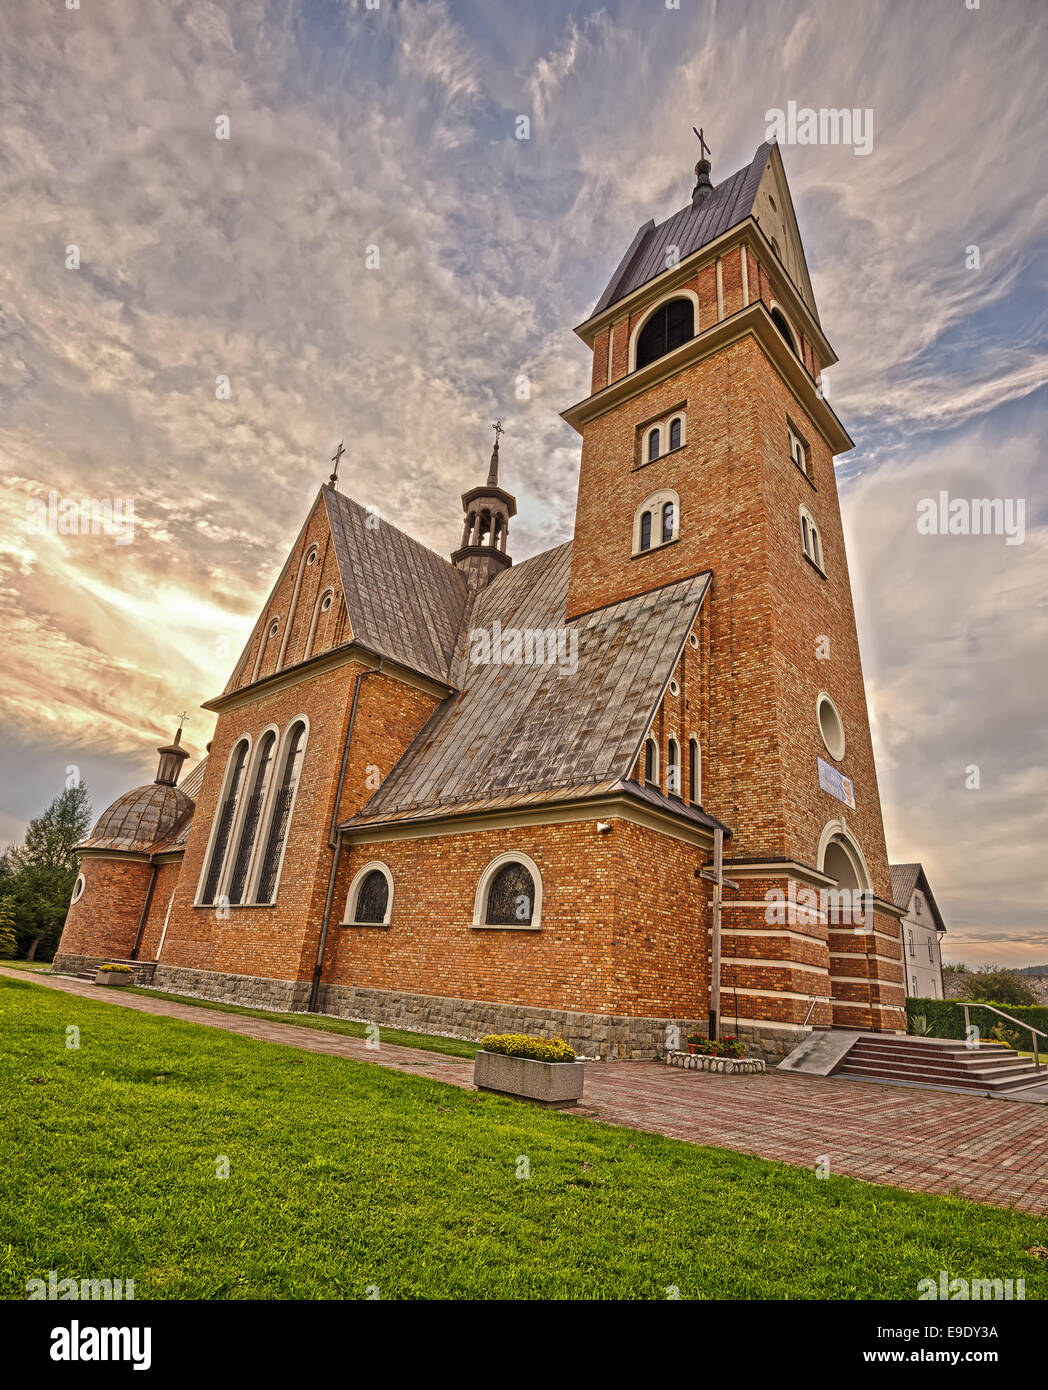 Neoromanica chiesa di San Sebastiano in Skomielna Biala vicino a Cracovia, Polonia. Immagine hdr. Foto Stock